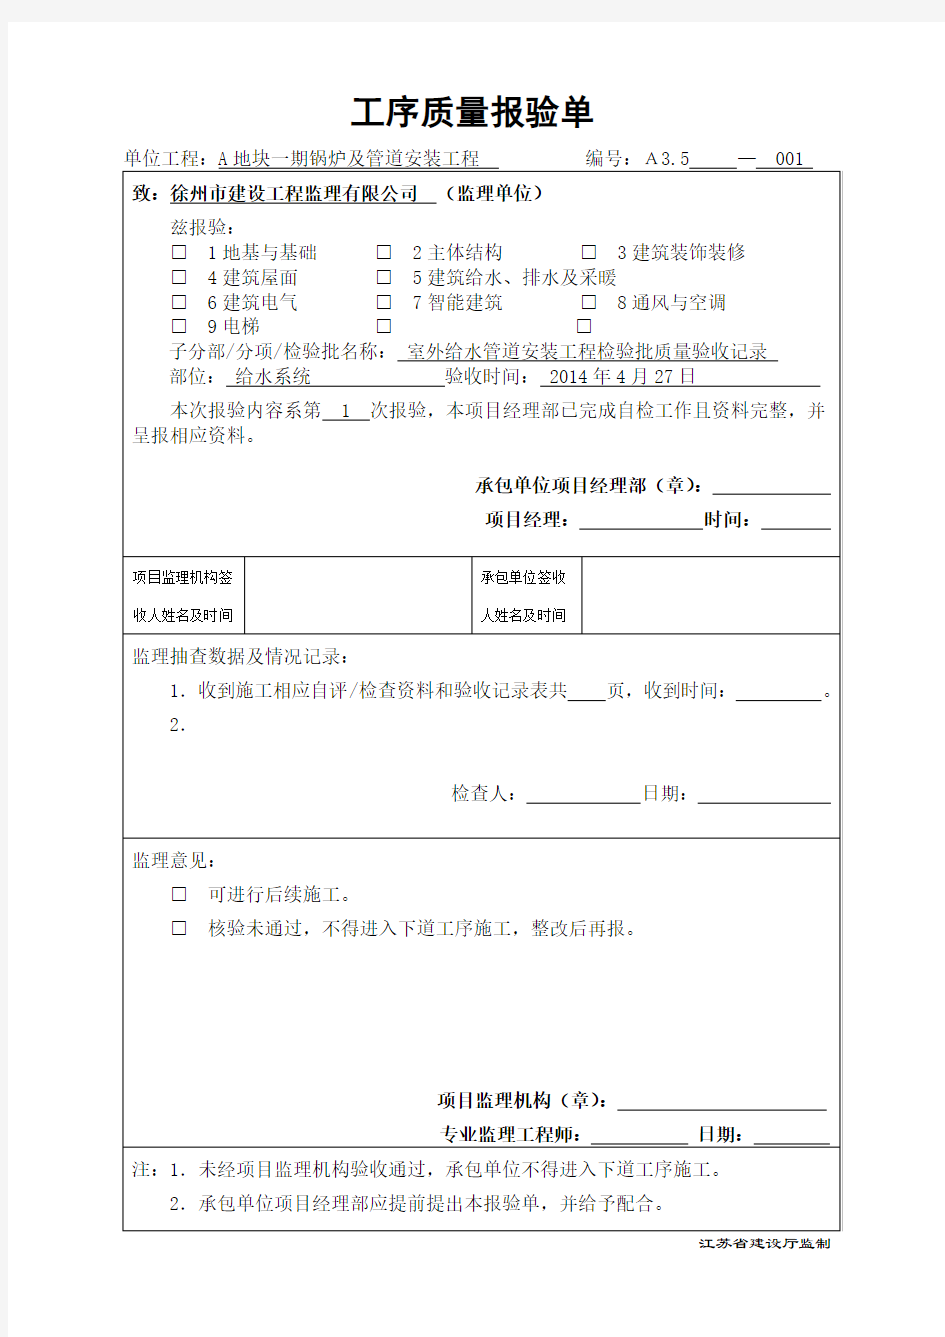 江苏省建筑工程资料表格--工序质量报验单